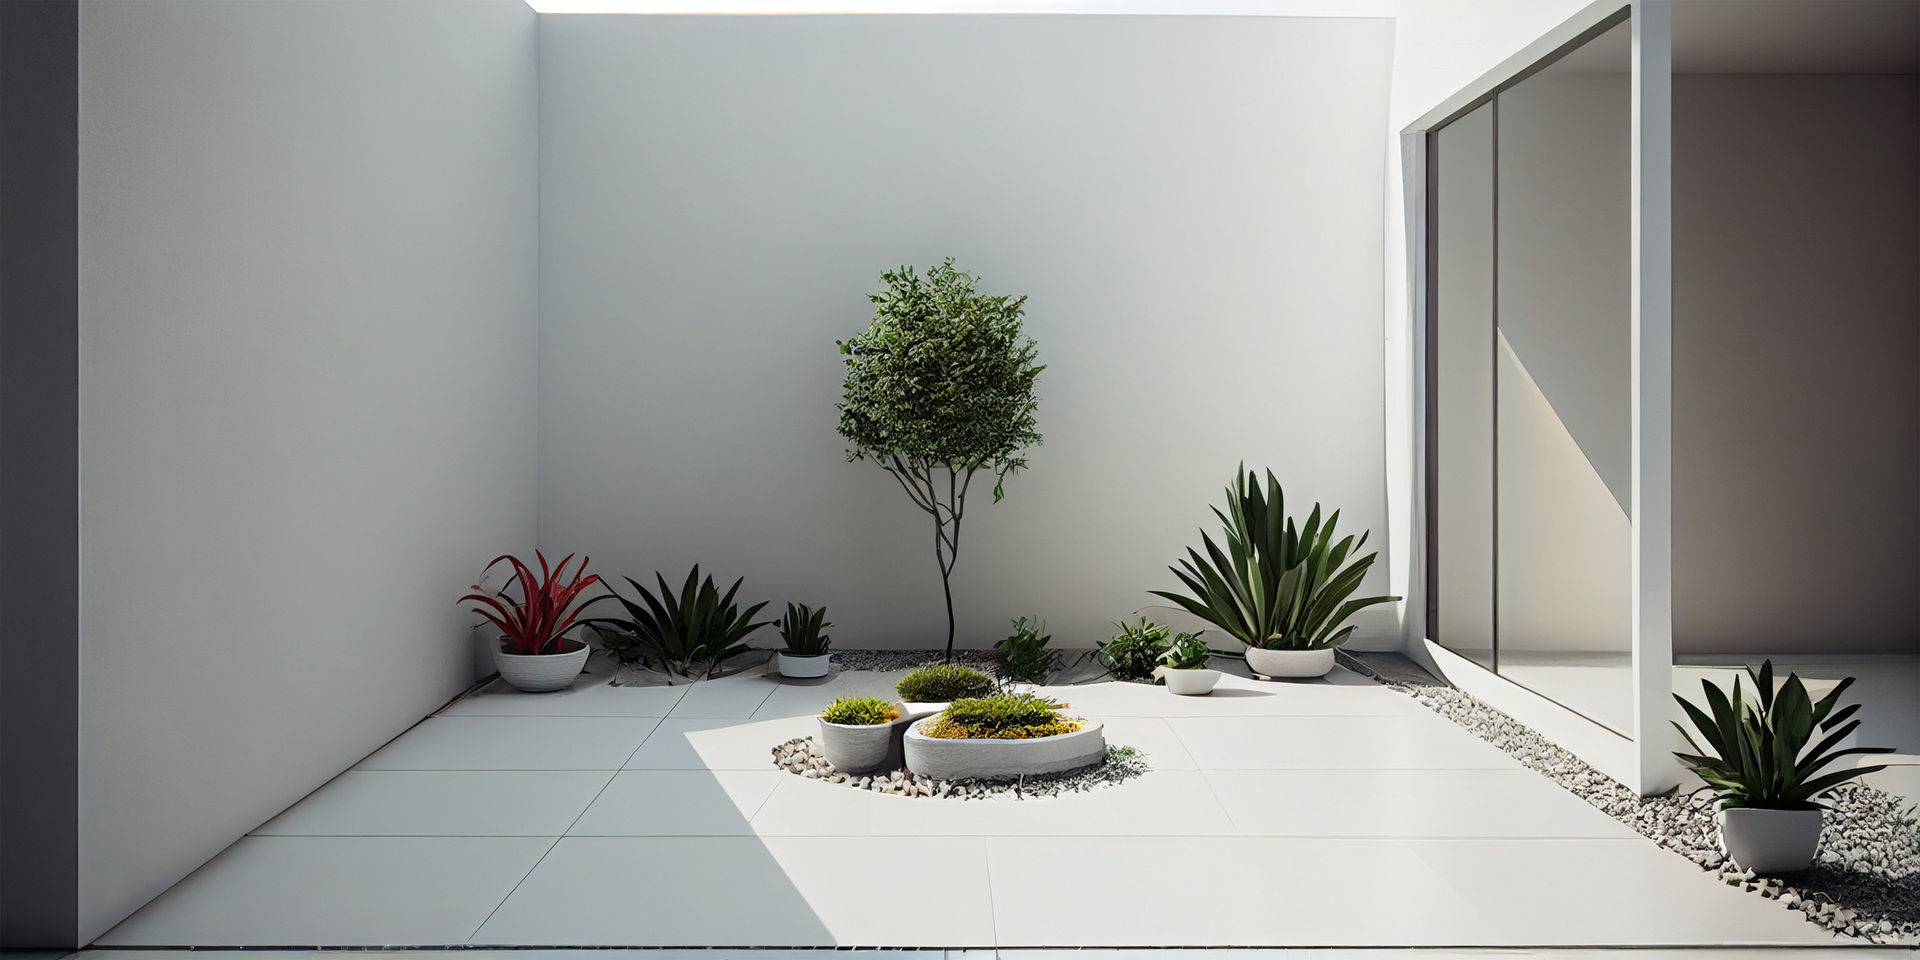 Na tym zapierającym dech w piersiach obrazku możemy podziwiać biały ogród w stylu minimalistycznym, gdzie dominuje czystość i elegancja. Białe kwiaty, geometryczne kształty i minimalizm w aranżacji tworzą spokojną i harmonijną przestrzeń, która emanuje prostotą i równowagą. Ten biały ogród w stylu minimalistycznym zapewnia wizualną lekkość i optymalną równowagę, tworząc przyjemne miejsce do wyciszenia i kontemplacji